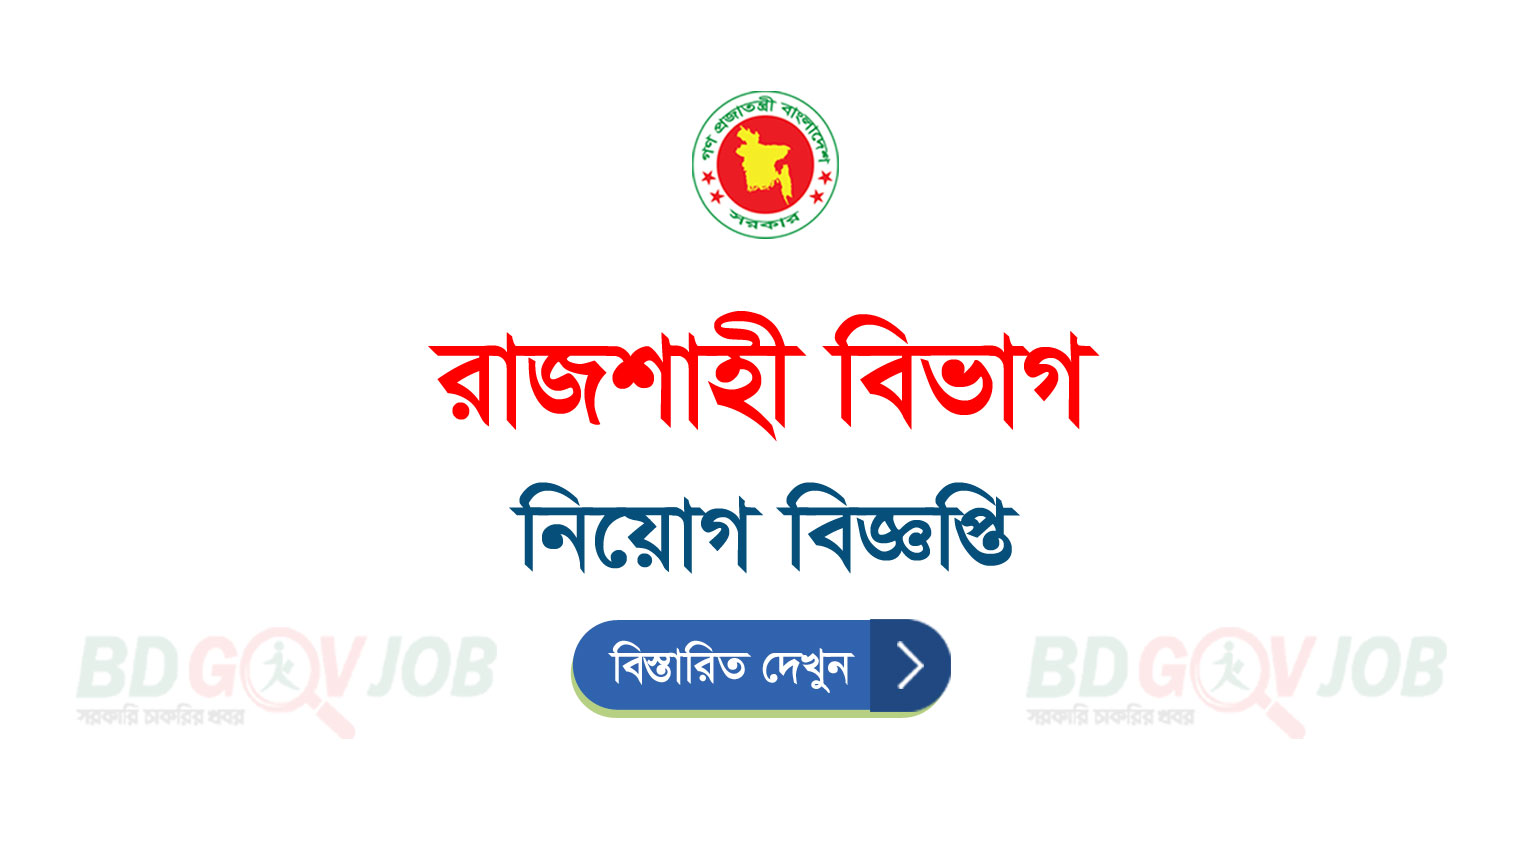 Rajshahi Division DIVRAJ Job Circular 2023